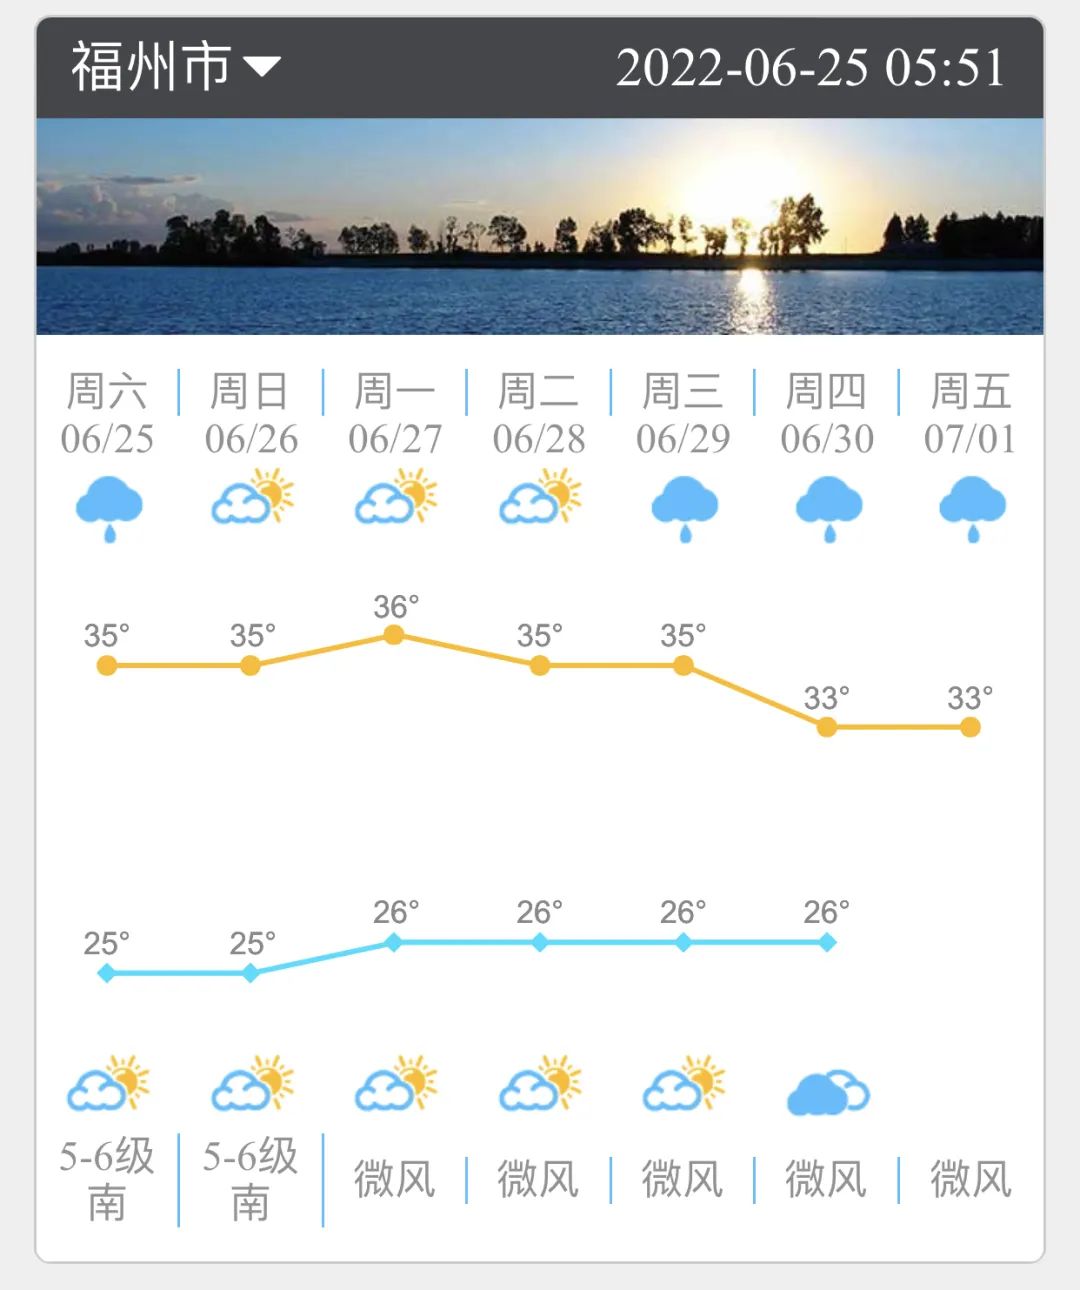 未来三天福州市区高温在35℃上下 午后局地有雷雨